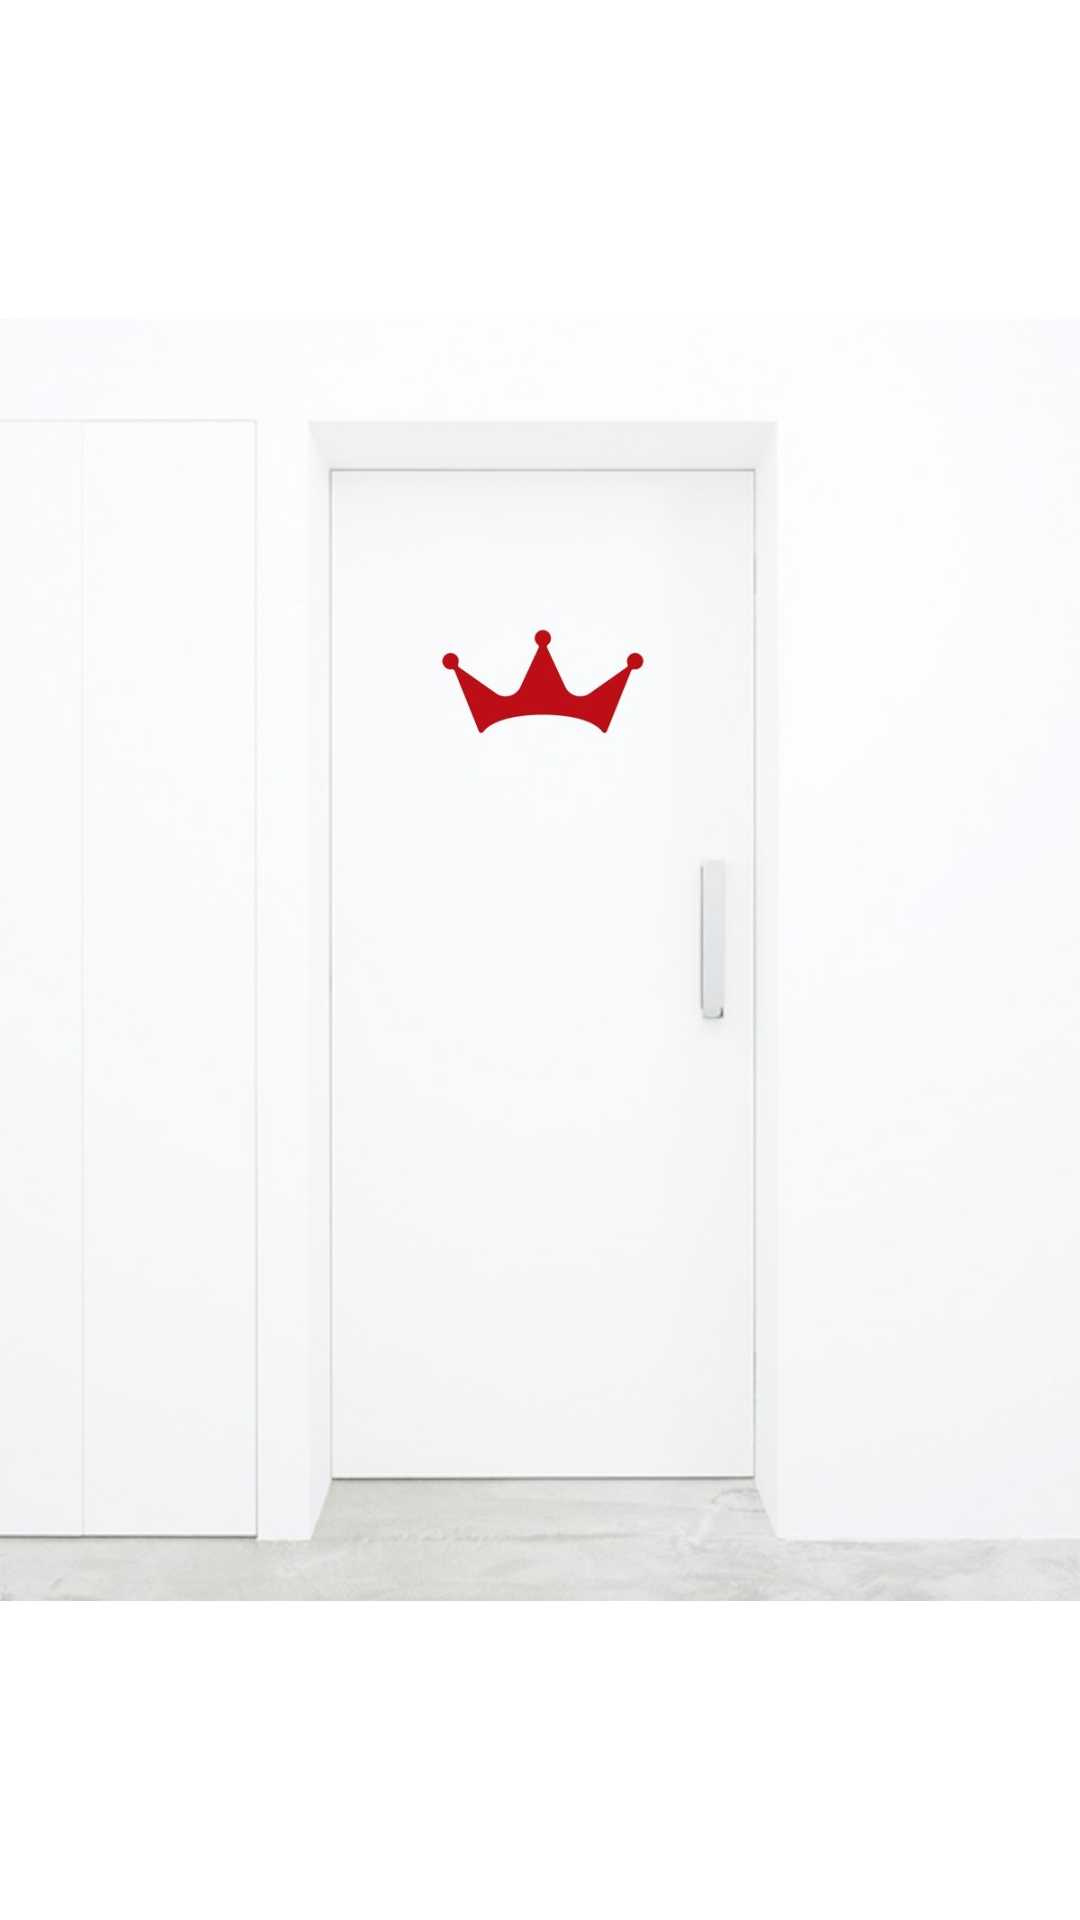 King Crown sticker